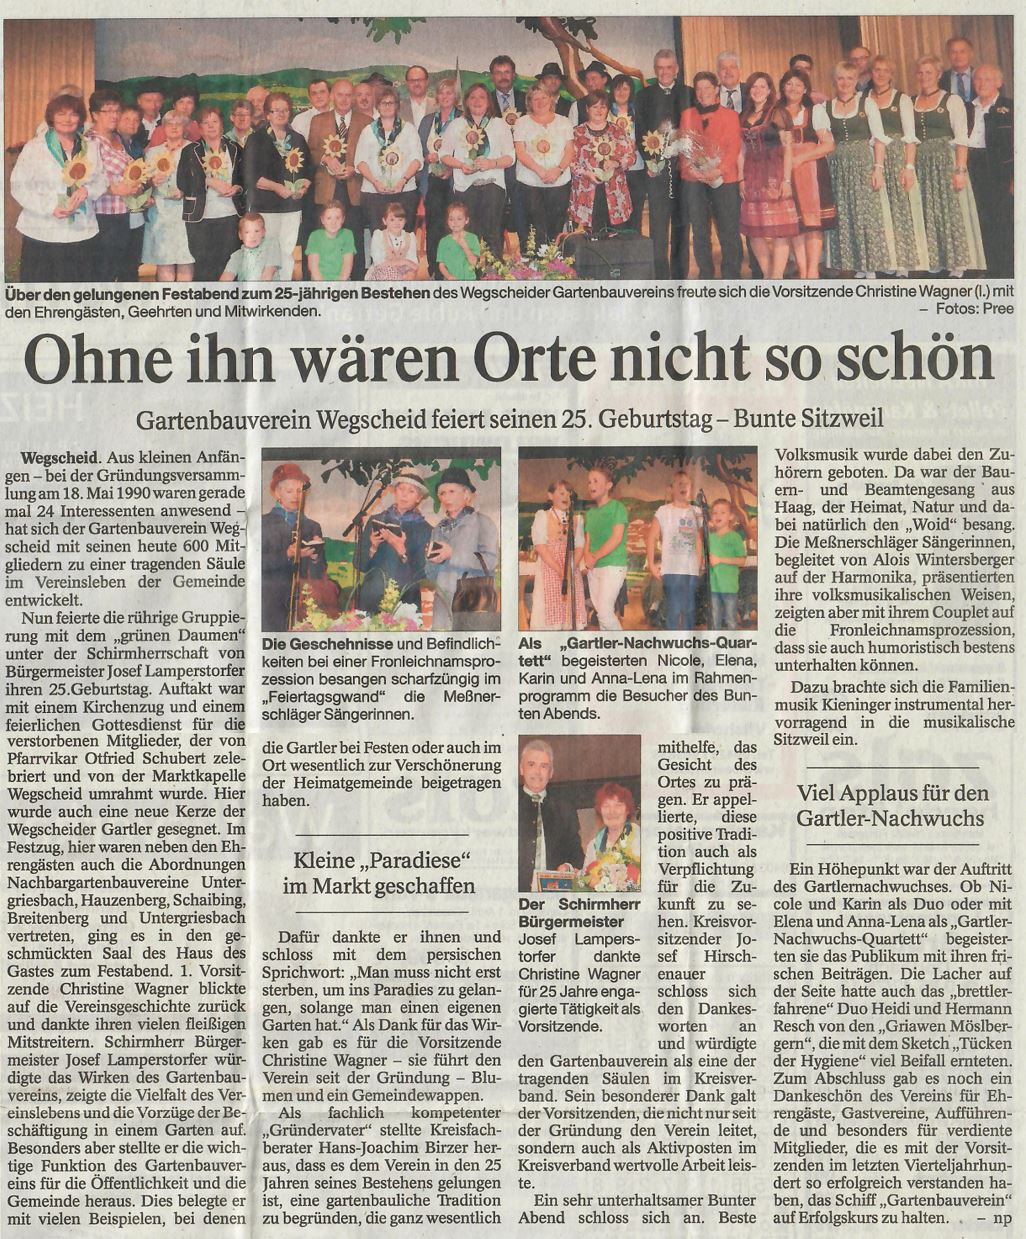 Ohne ihn wären Orte nicht so schön, 25 Jahrfeier, Passauer Neue Presse vom 25. Juni 2015